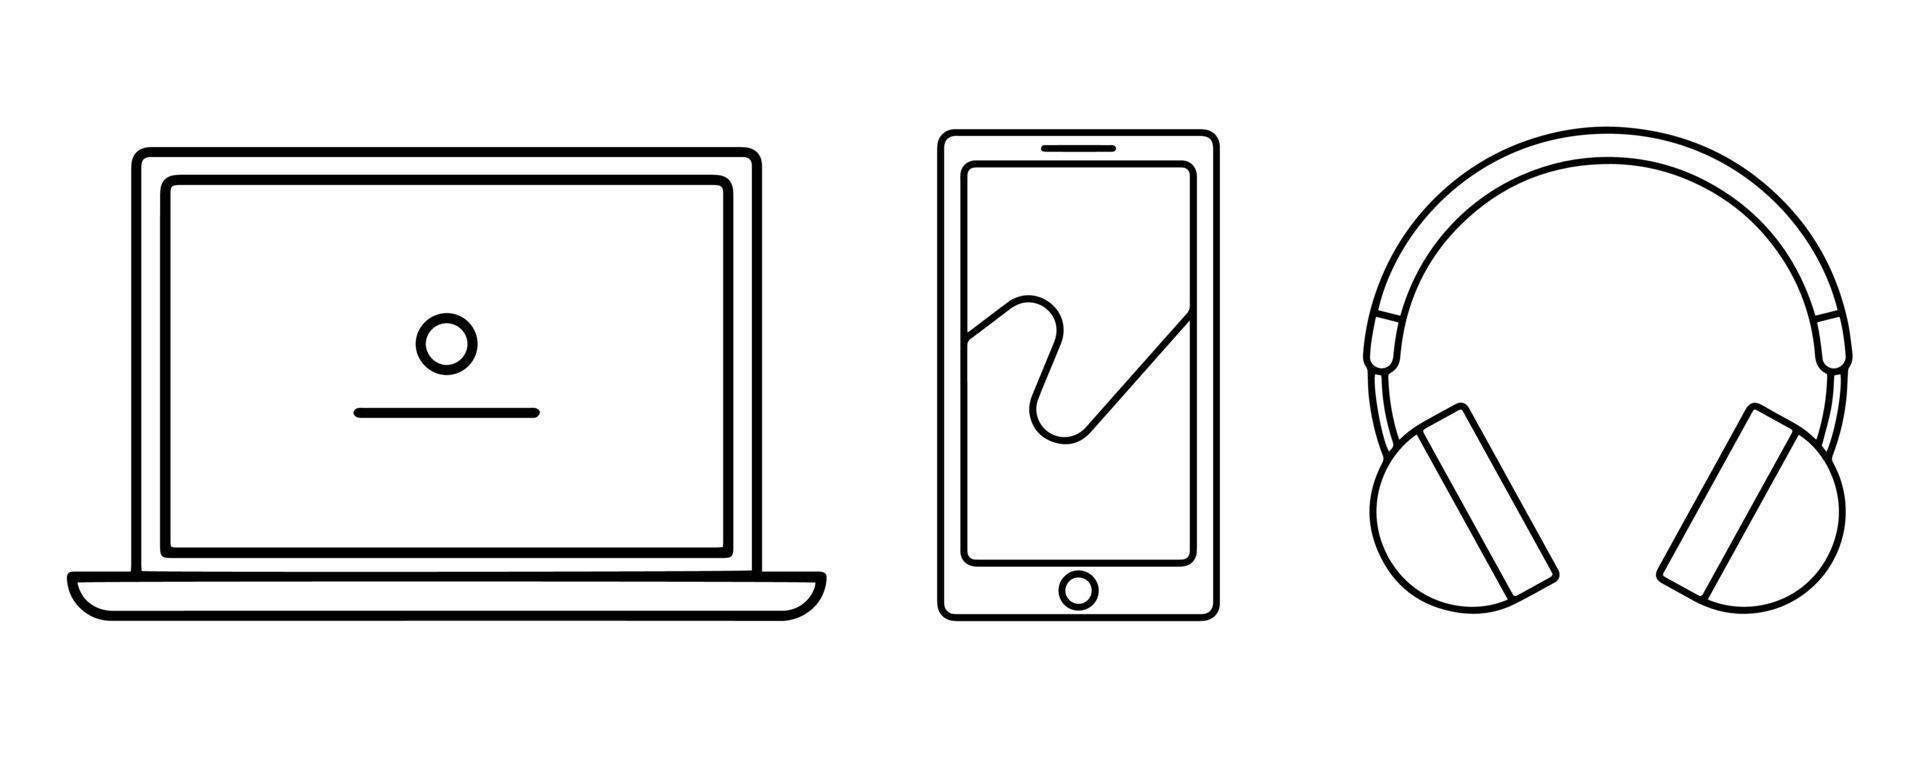 ilustração em vetor ícone computador, gadget e fone de ouvido. design de linha simples em fundo branco.